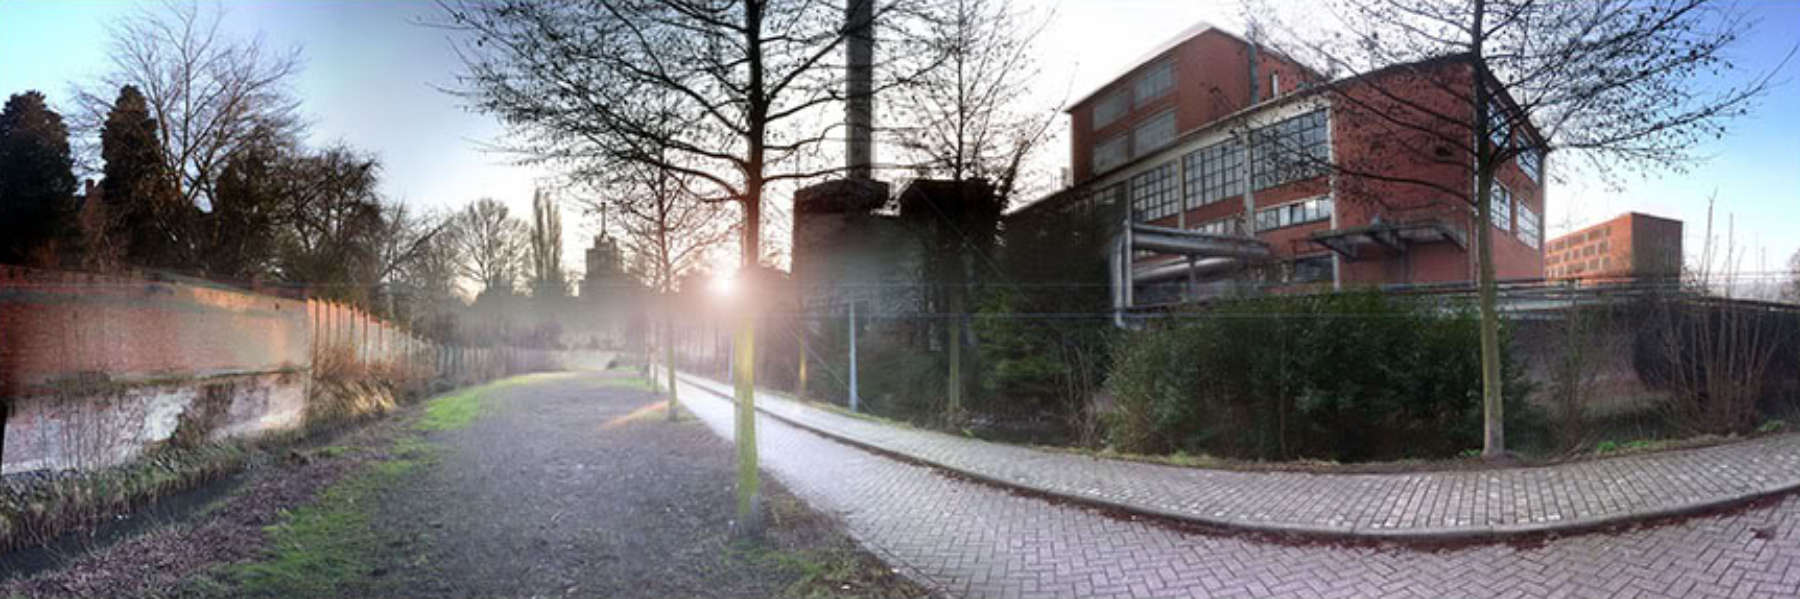 Links in beeld de Vunt, rechts de Dijle verscholen achter het groen in het centrum van Leuven